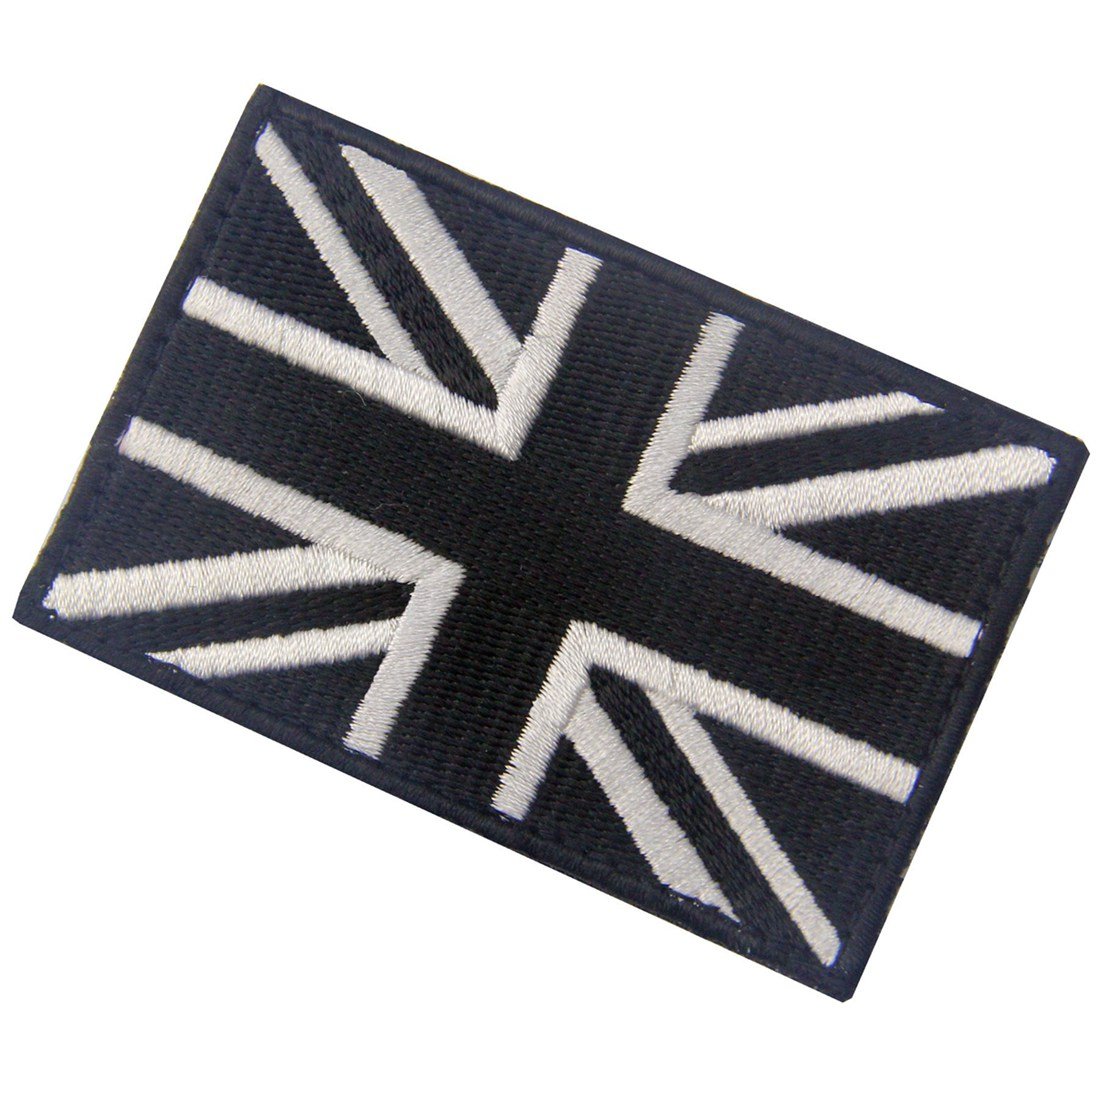 Tactical Great British Union Jack Patch Embroidered England Flag Morale Applique Fastener Hook & Loop UK Emblem